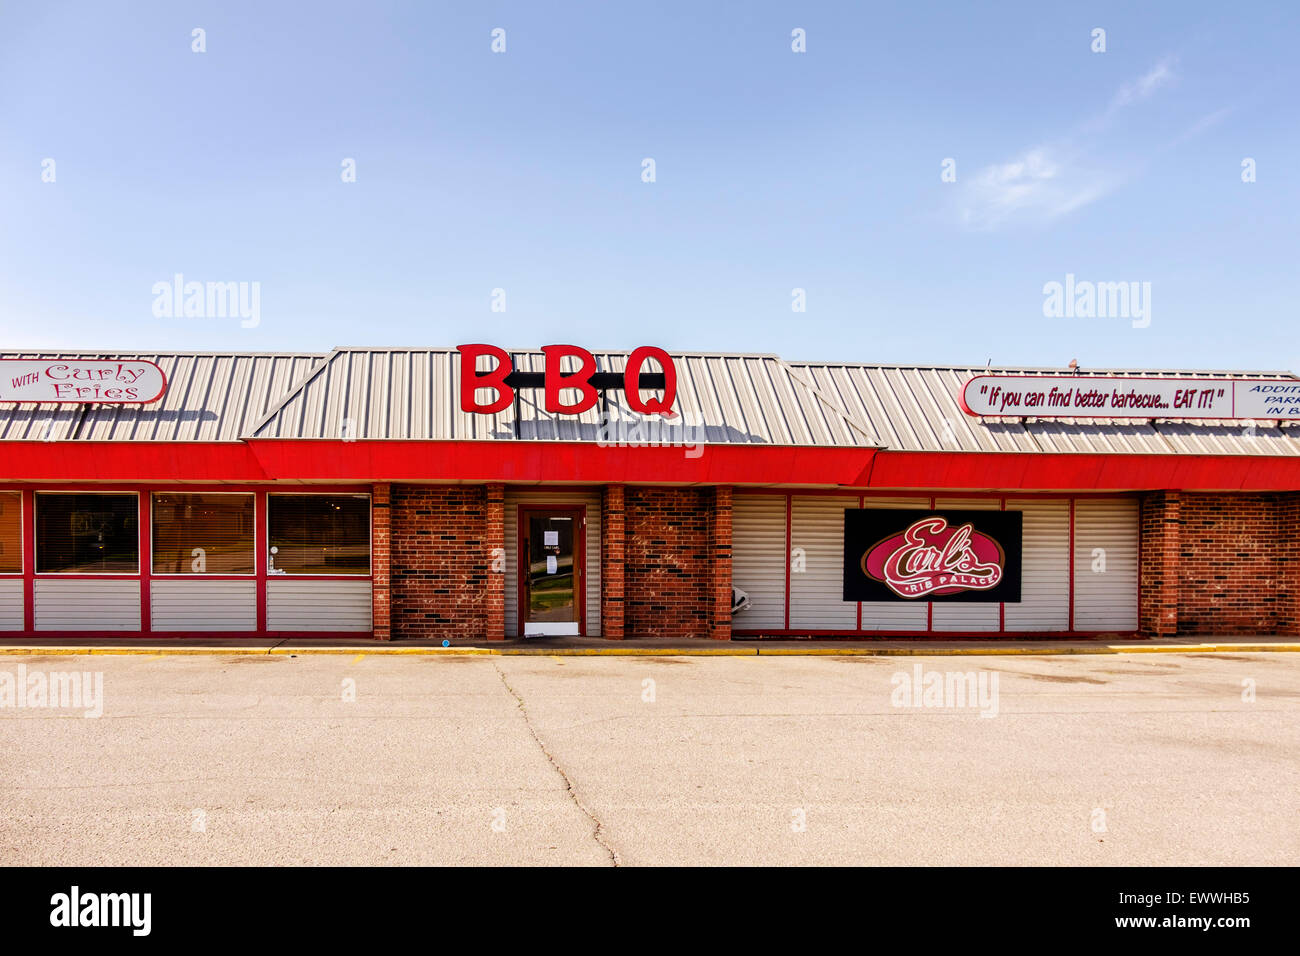 The front exterior of Earl's Rib Palace, a BBQ restaurant in Oklahoma City, Oklahoma, USA. Stock Photo